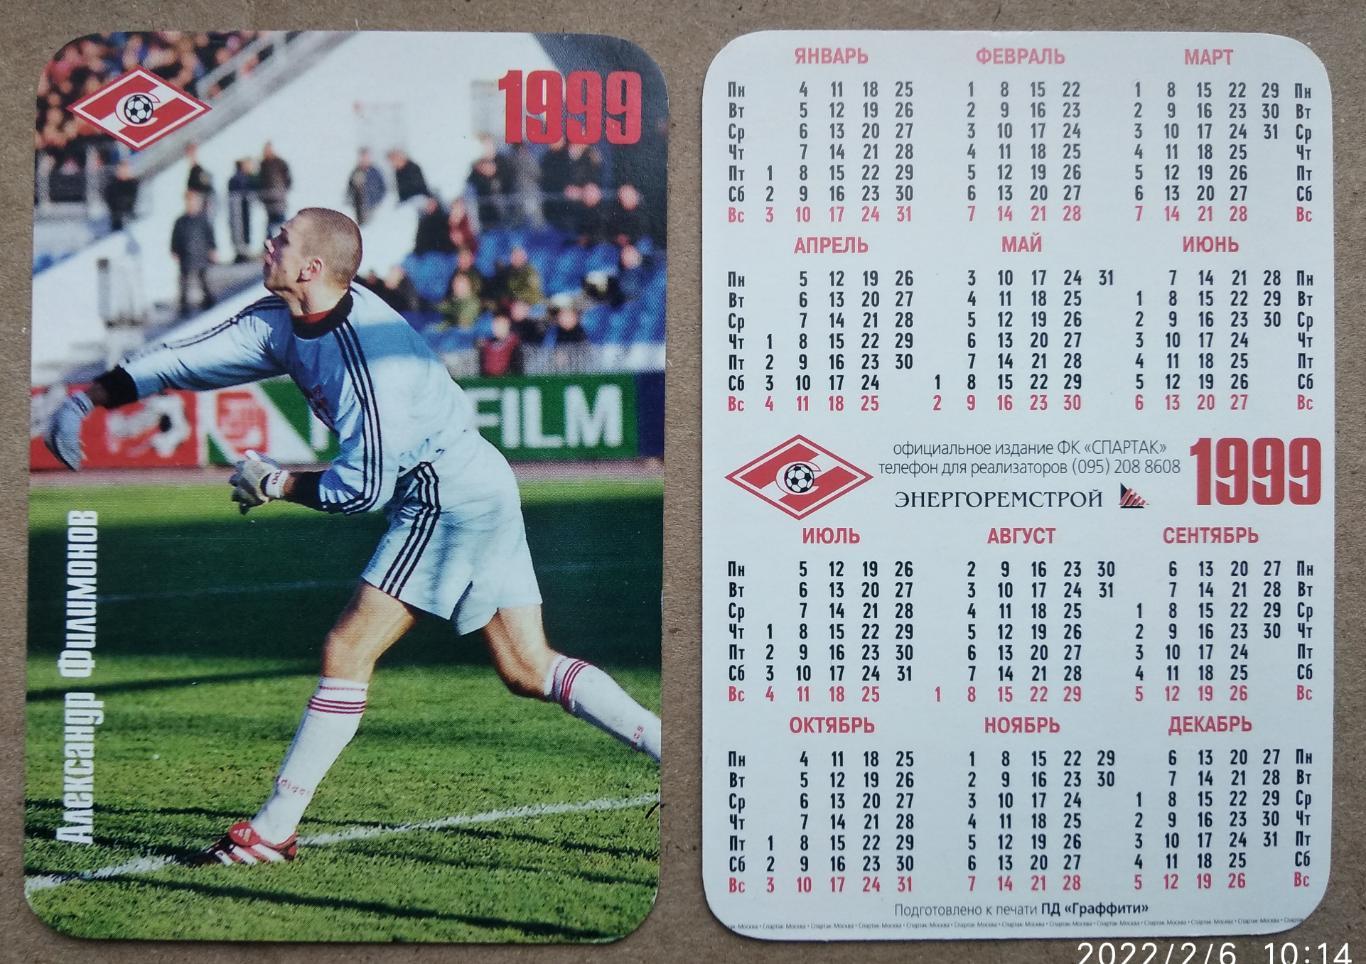 Спартак Москва - Филимонов , календарик на 1999 год, официальное издание клуба